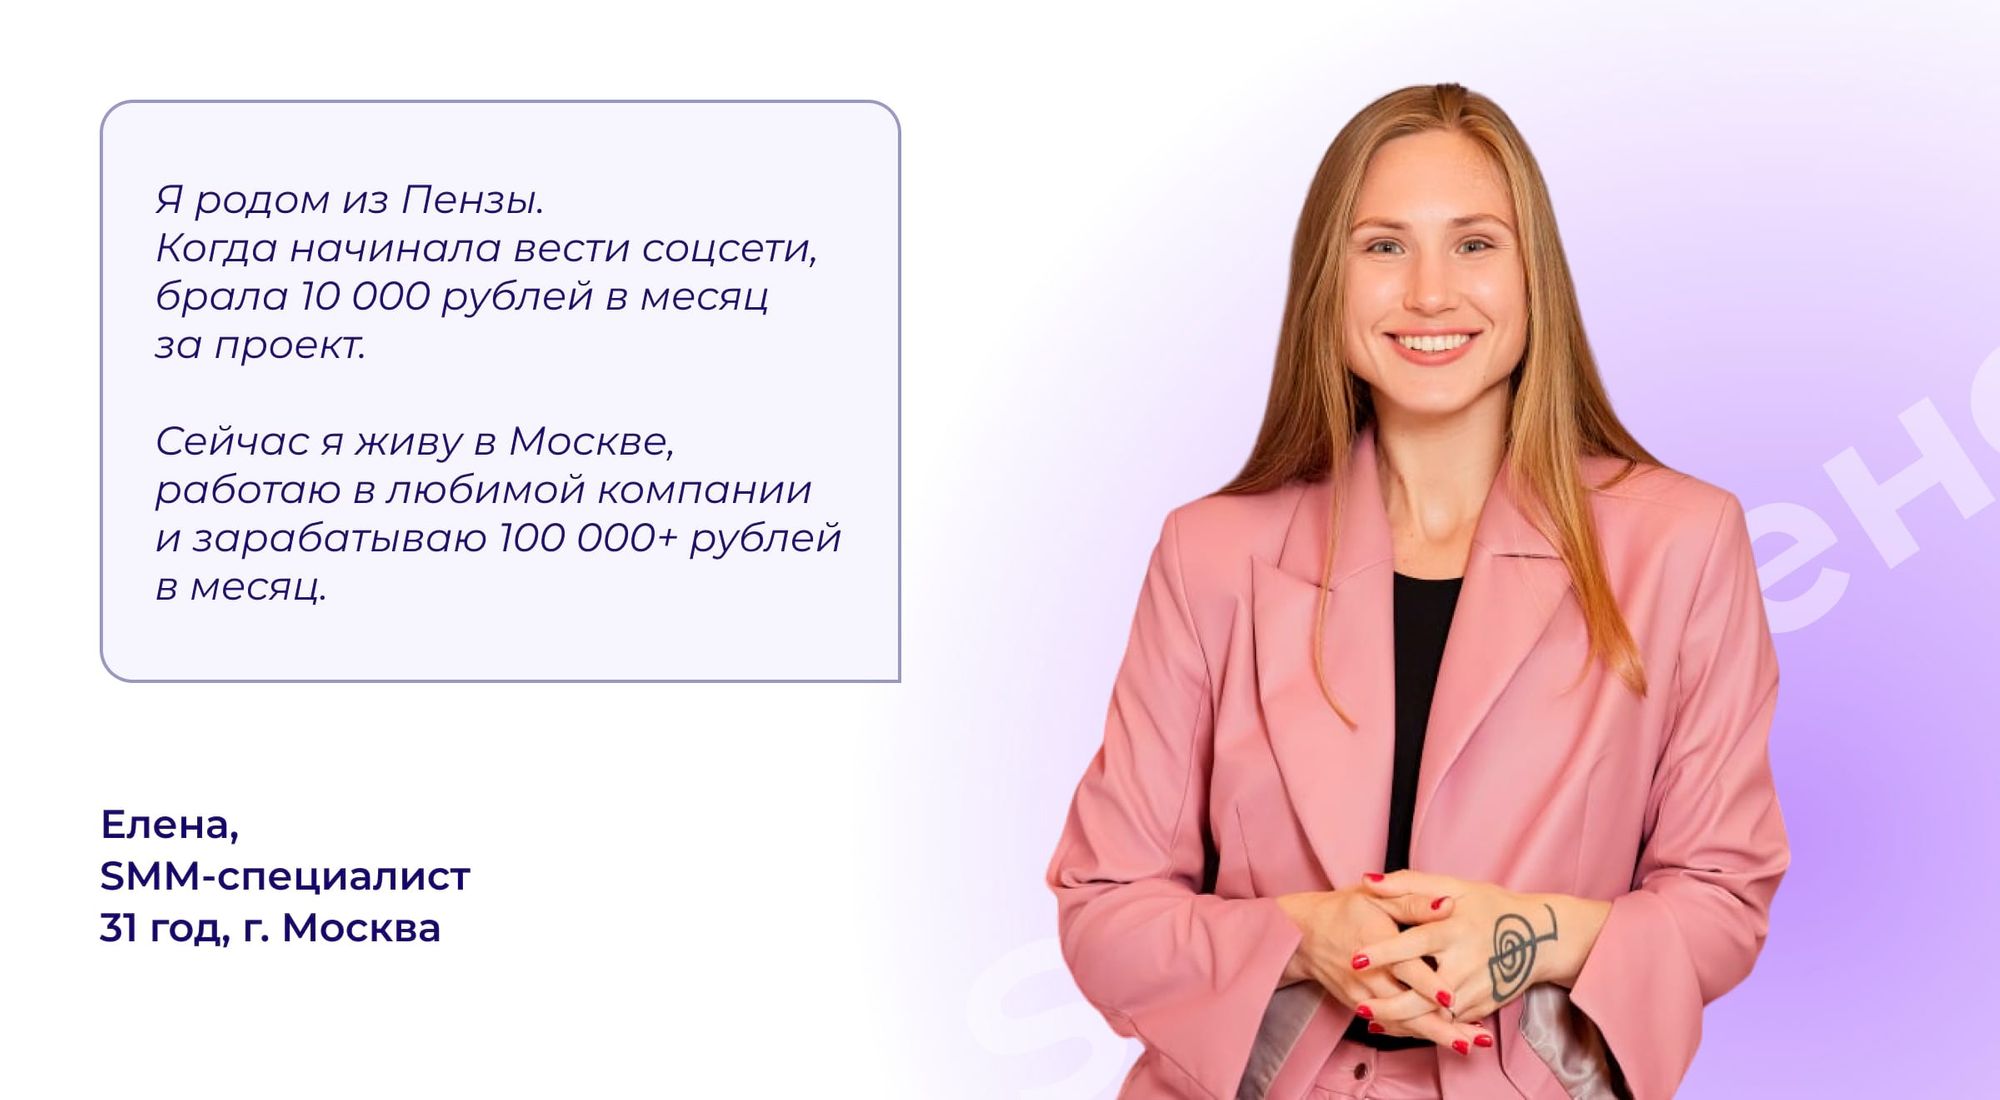 Елена SMM-специалист родом из Пензы зарабатывет 100000+ рублей в месяц